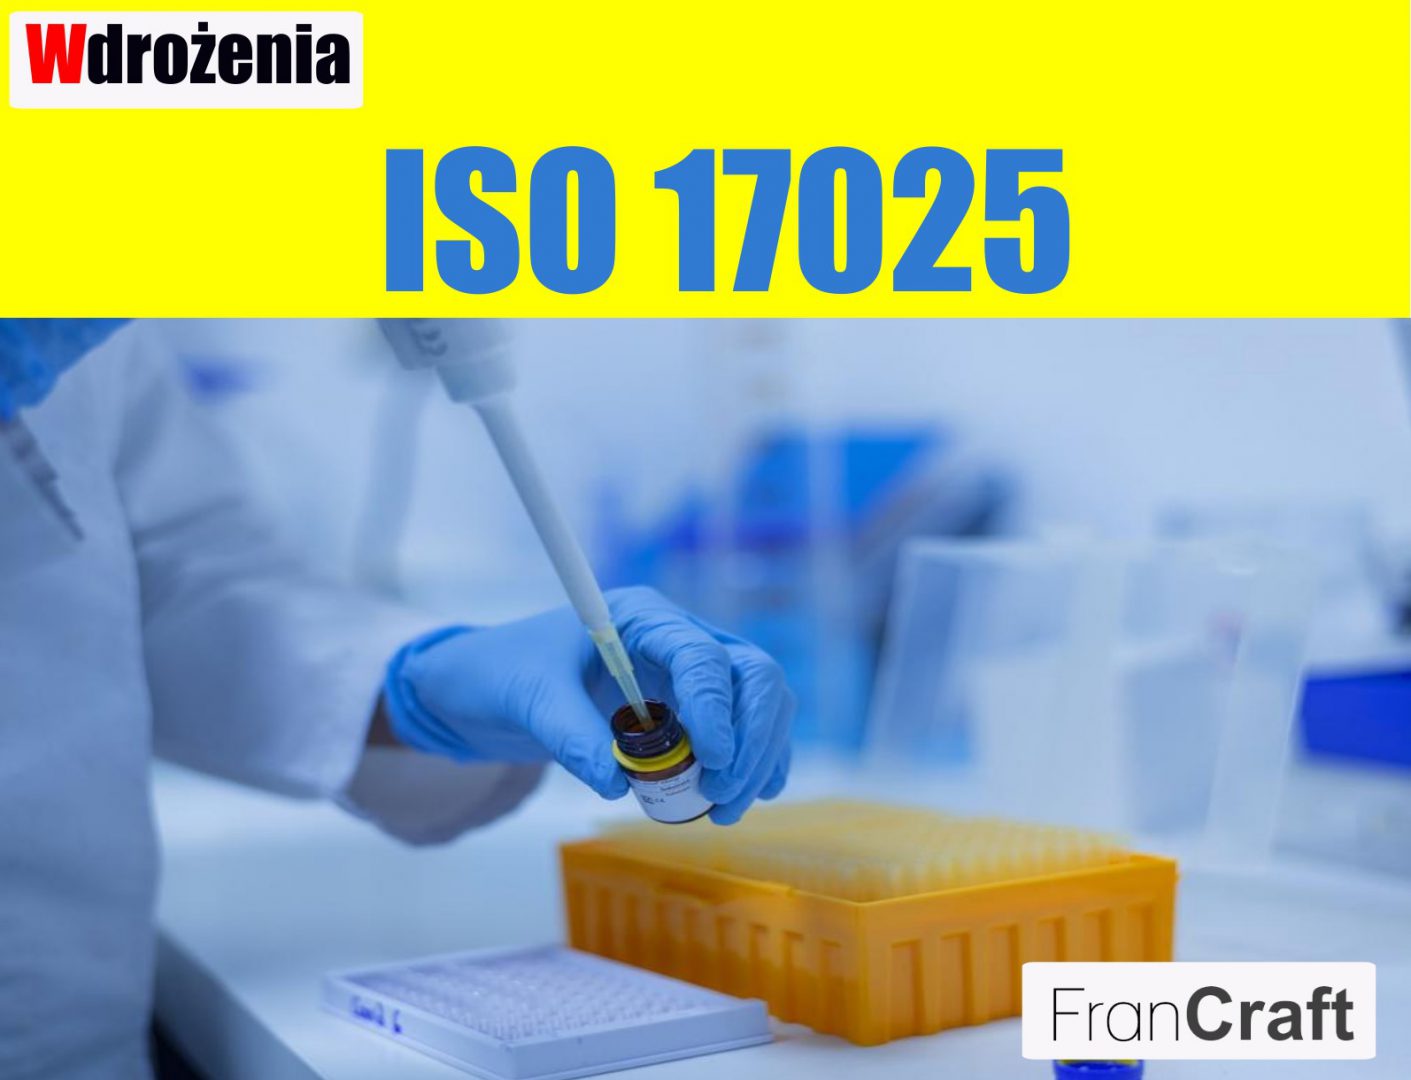 wdrażanie normy ISO 17025 zarządzanie jakością w laboratorium